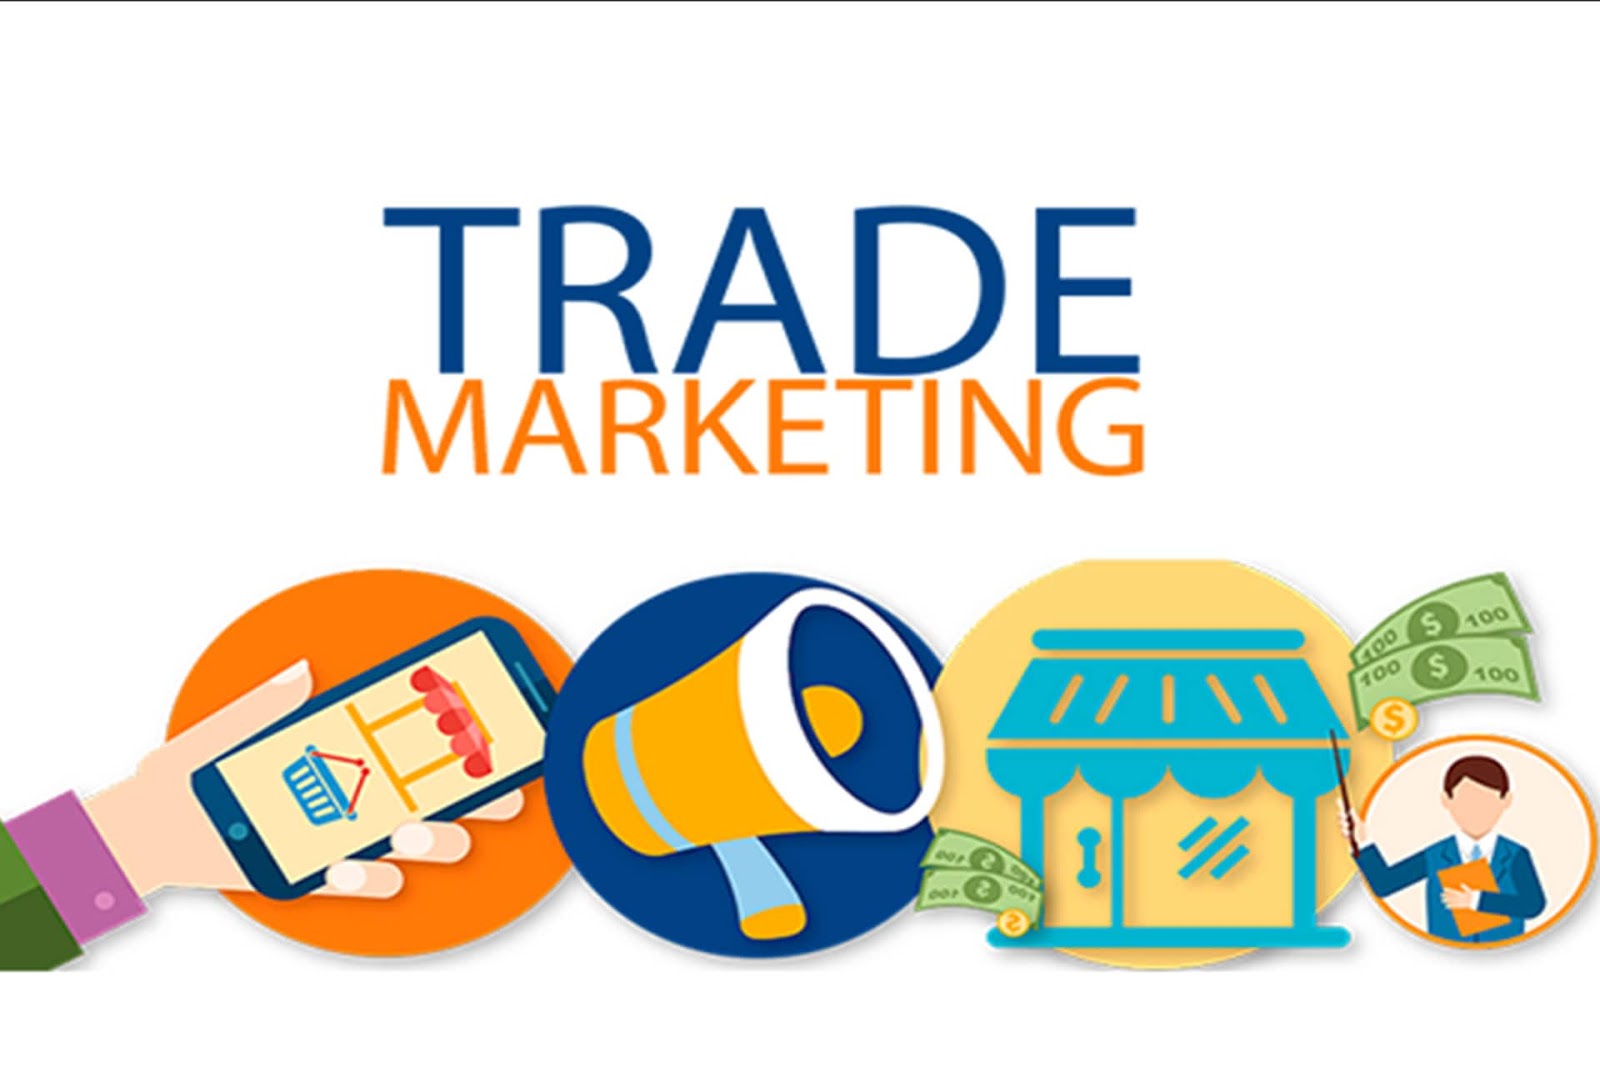 Trade marketing là gì? Các bước tạo lập kế hoạch trade marketing hiệu quả